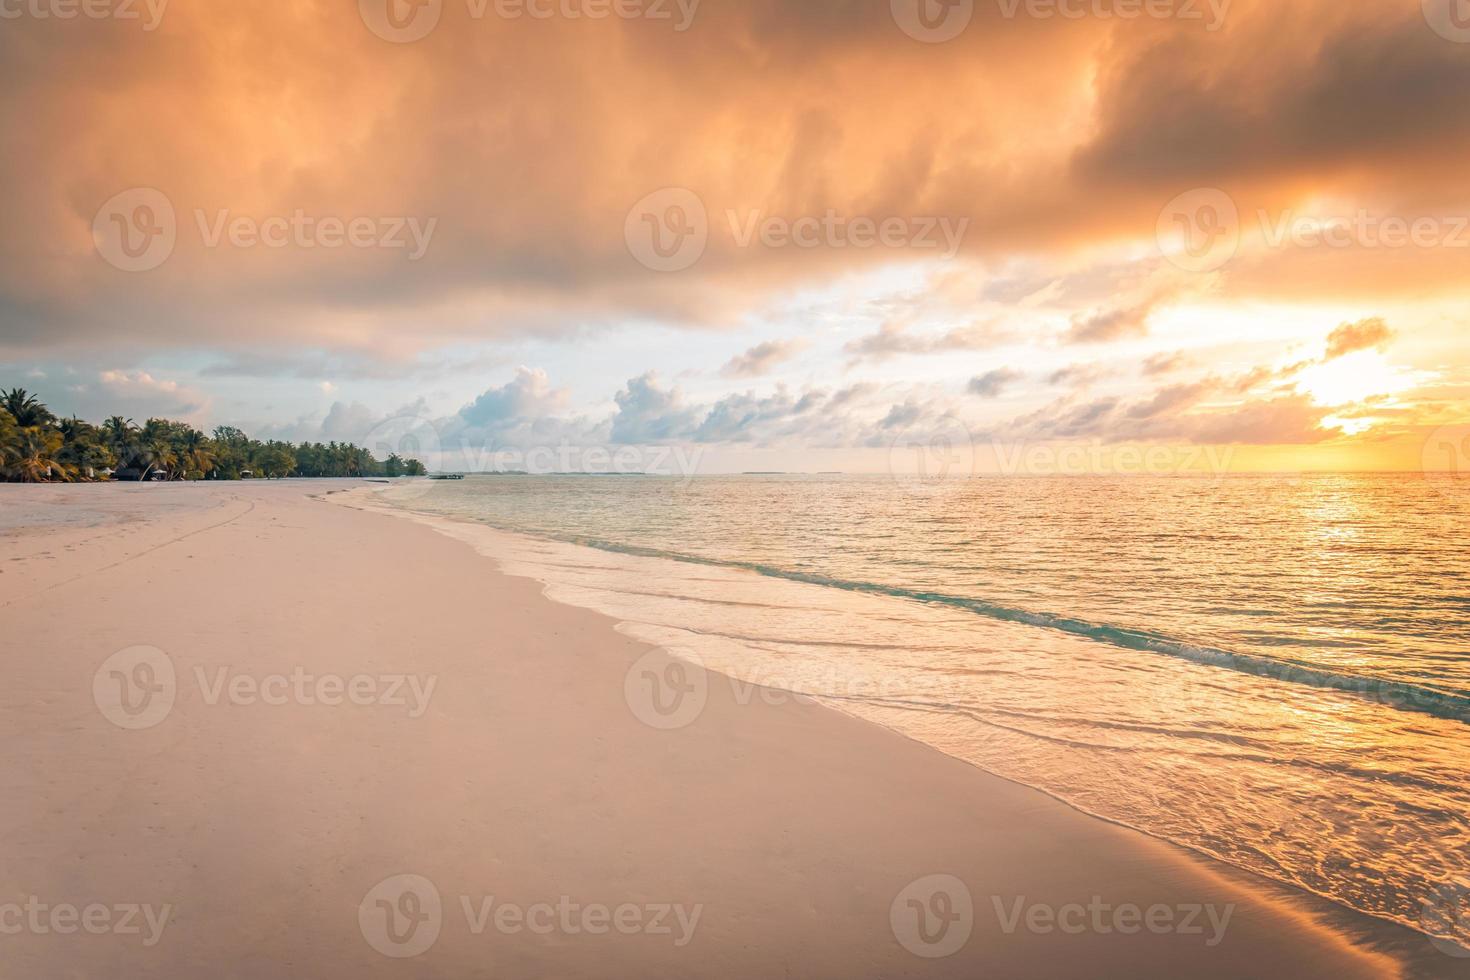 detailopname van zee strand en kleurrijk zonsondergang lucht. panoramisch strand landschap. leeg tropisch strand en zeegezicht. oranje en gouden zonsondergang lucht, zacht zand, rust, rustig ontspannende zonlicht, zomer humeur foto